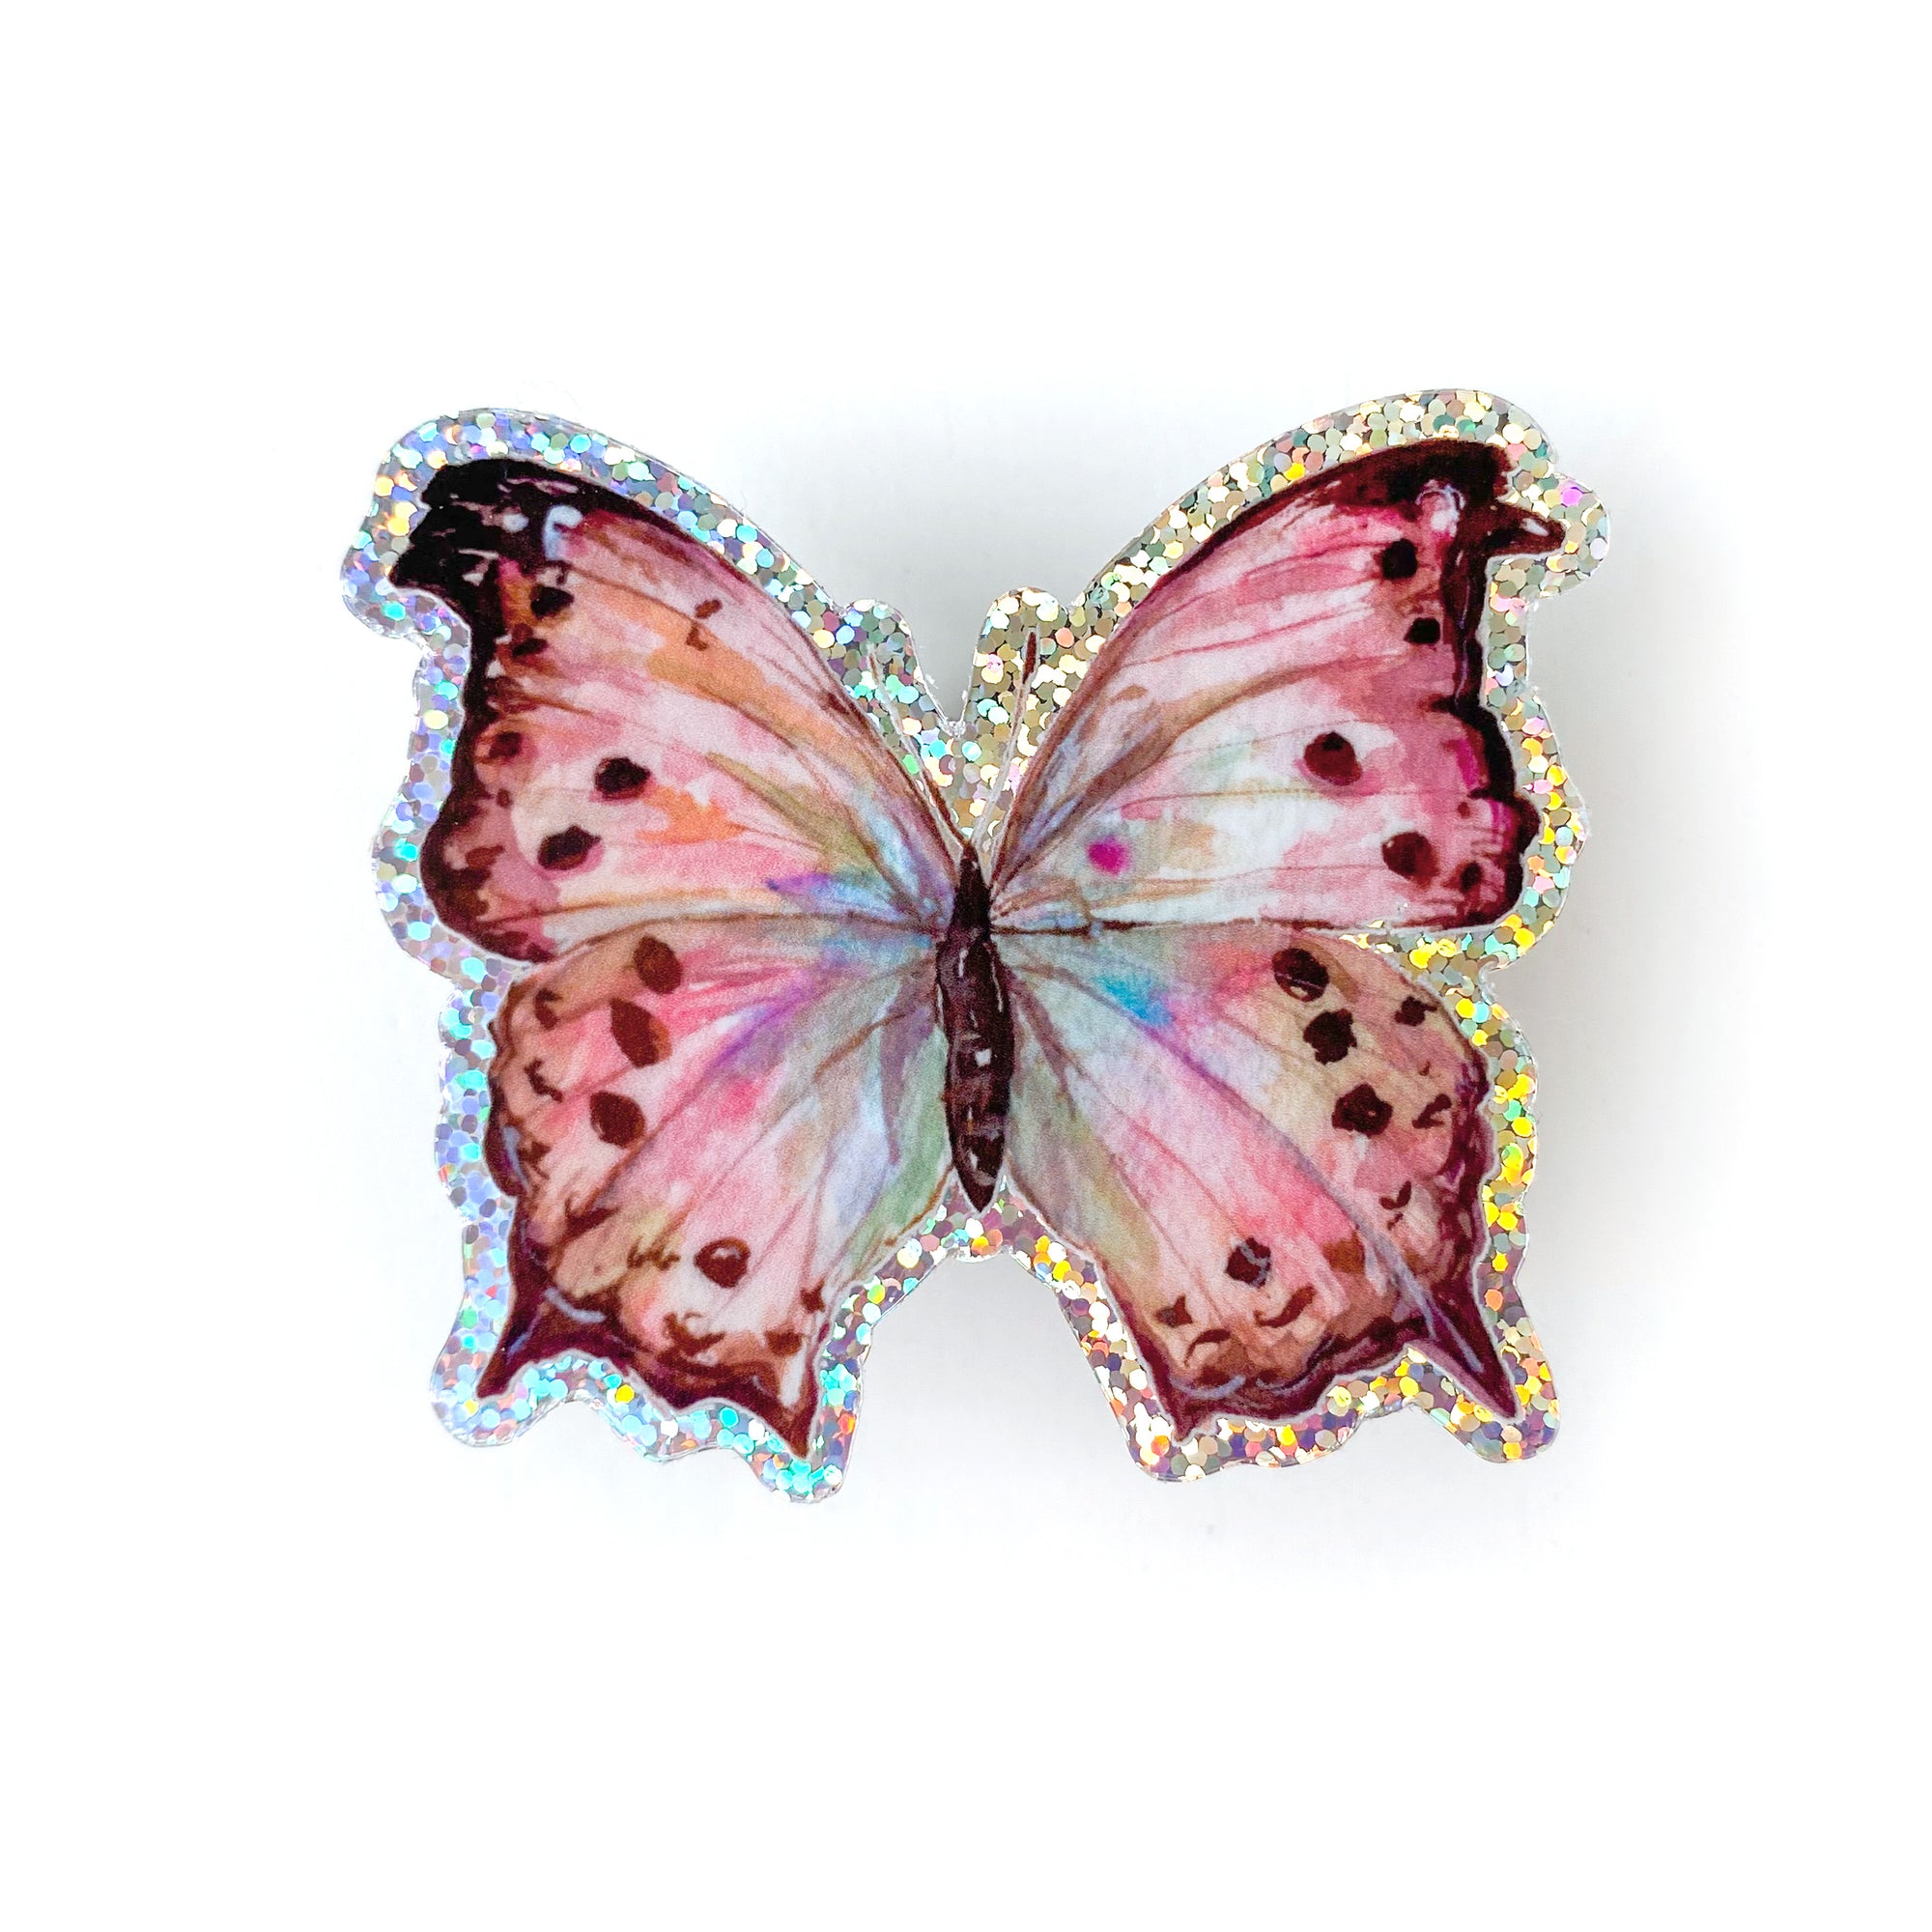 https://camimonet.com/cdn/shop/files/glitter-butterfly-sticker-cami-monet_2000x.jpg?v=1688059075